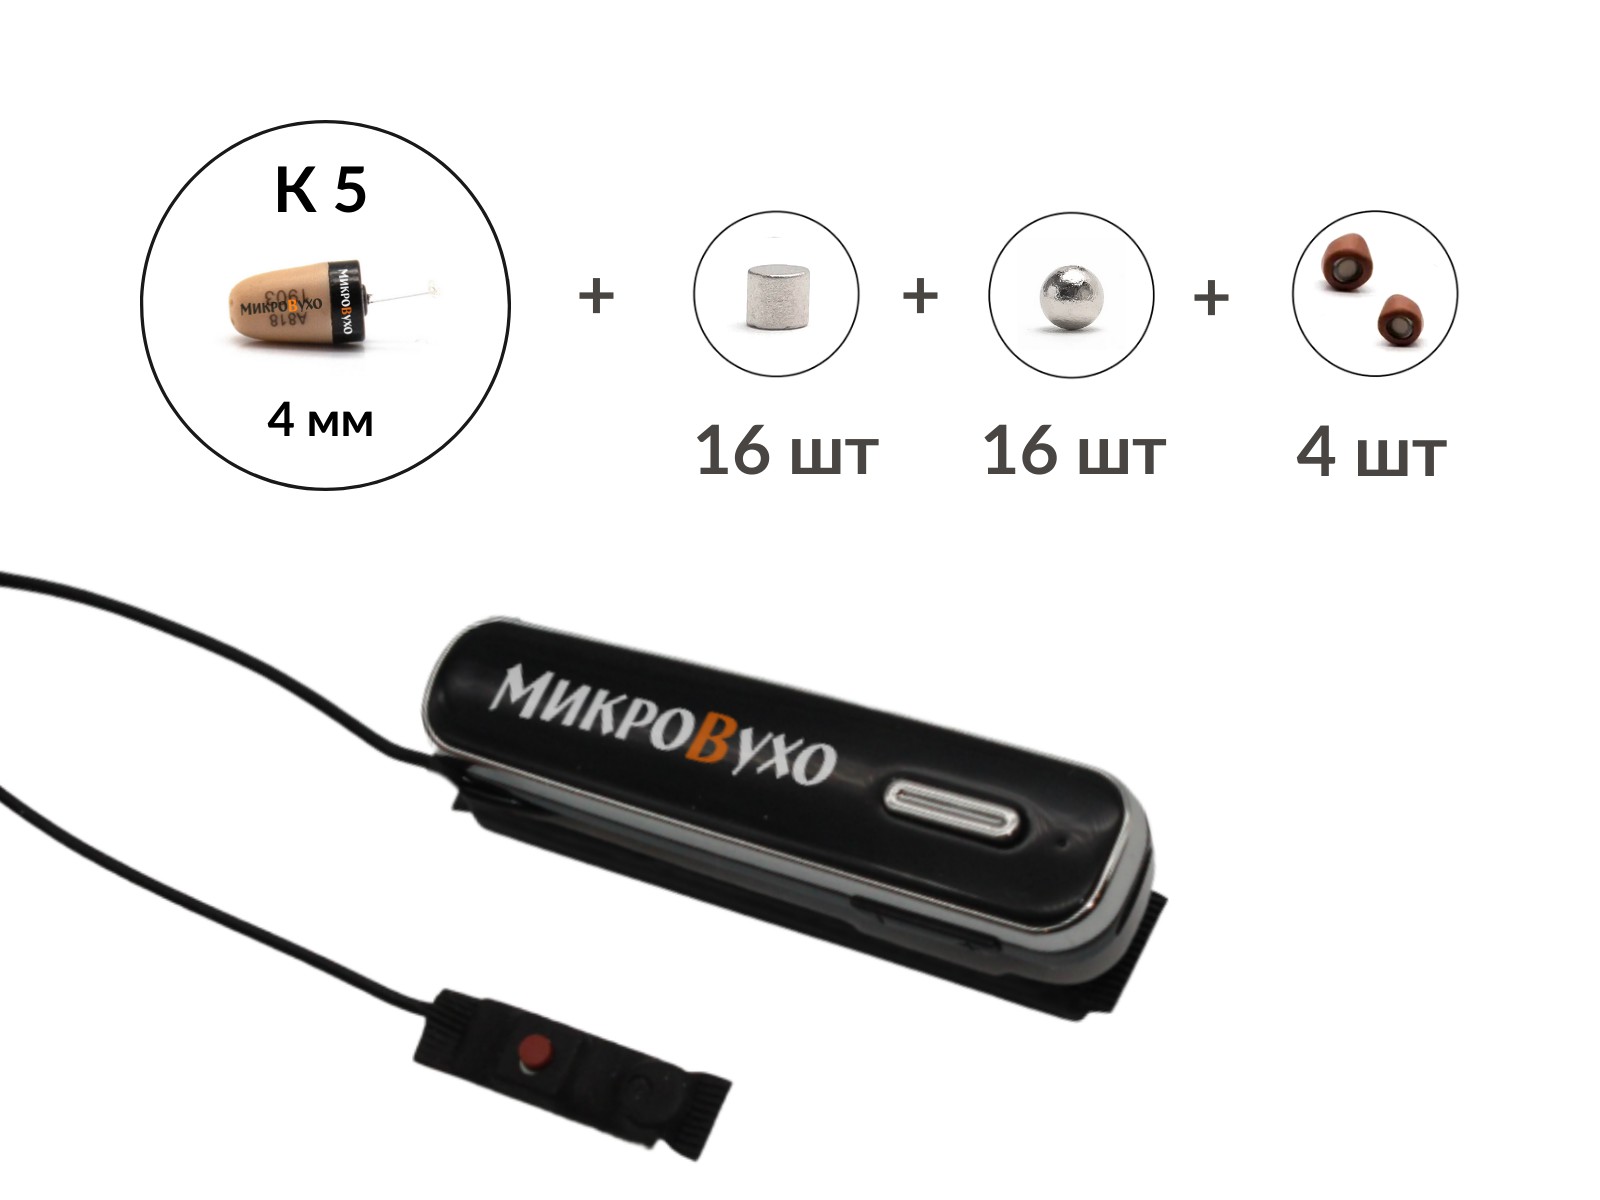 Универсальная гарнитура Bluetooth Box Premier Lite Plus с капсулой K5 4 мм и магнитами 2 мм - изображение 2